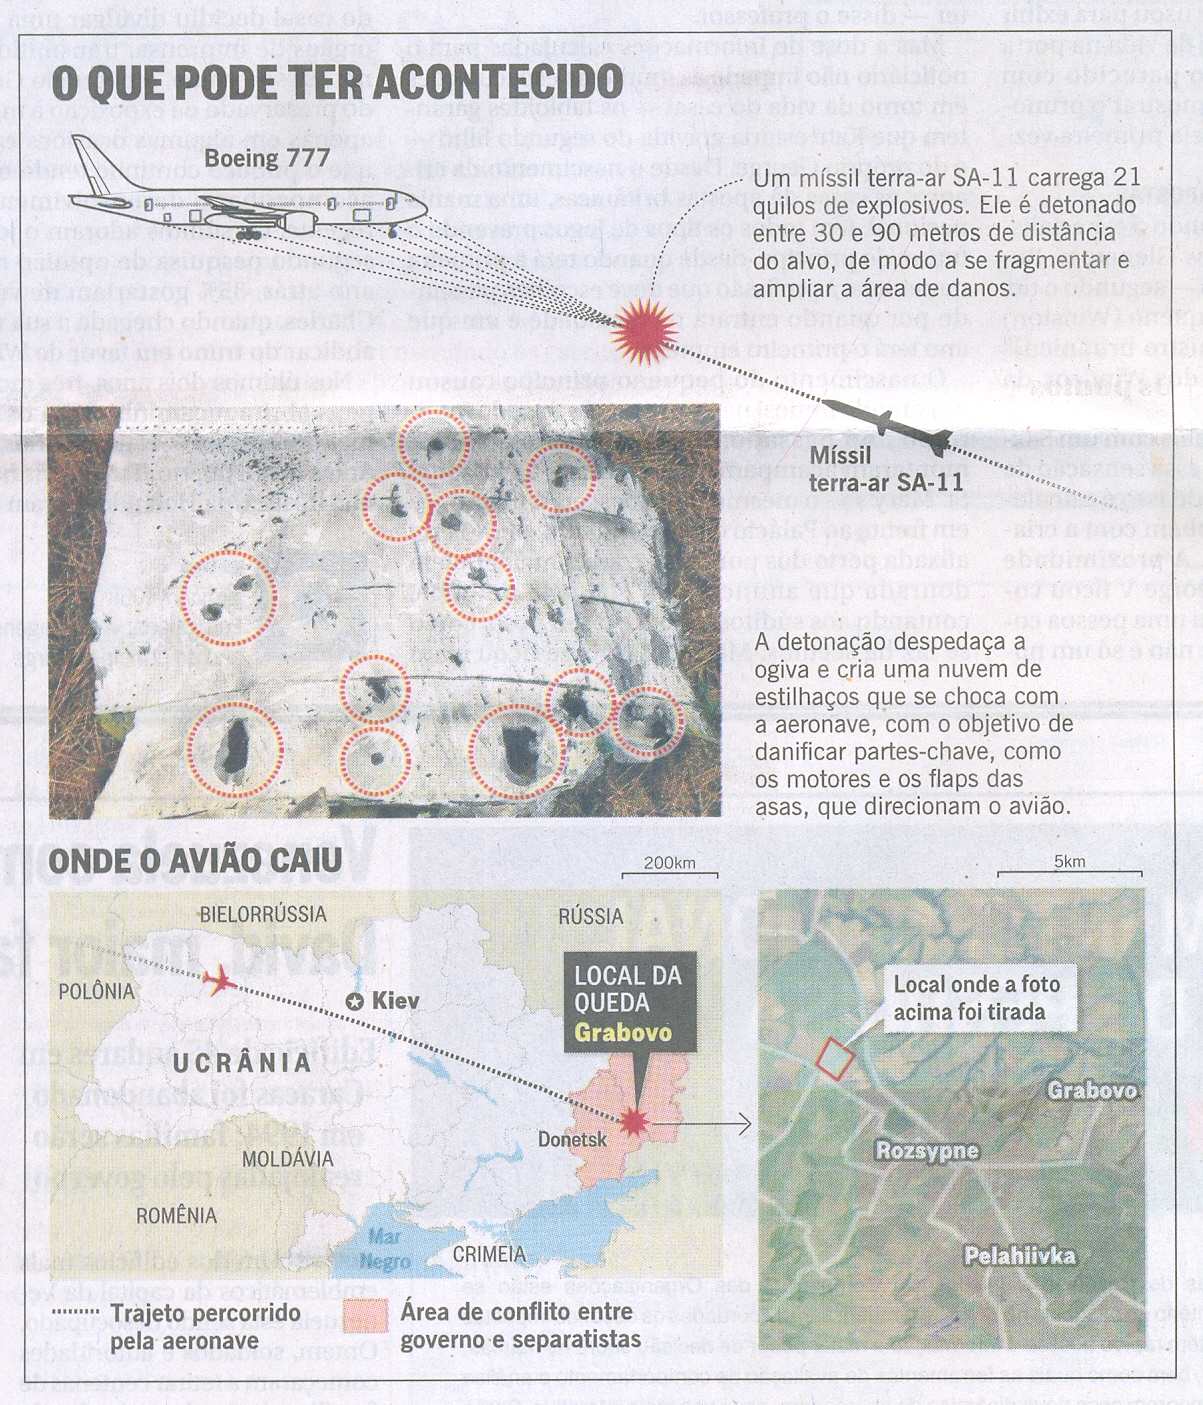 MH17 - Fotos indicam que míssil derrubou avião